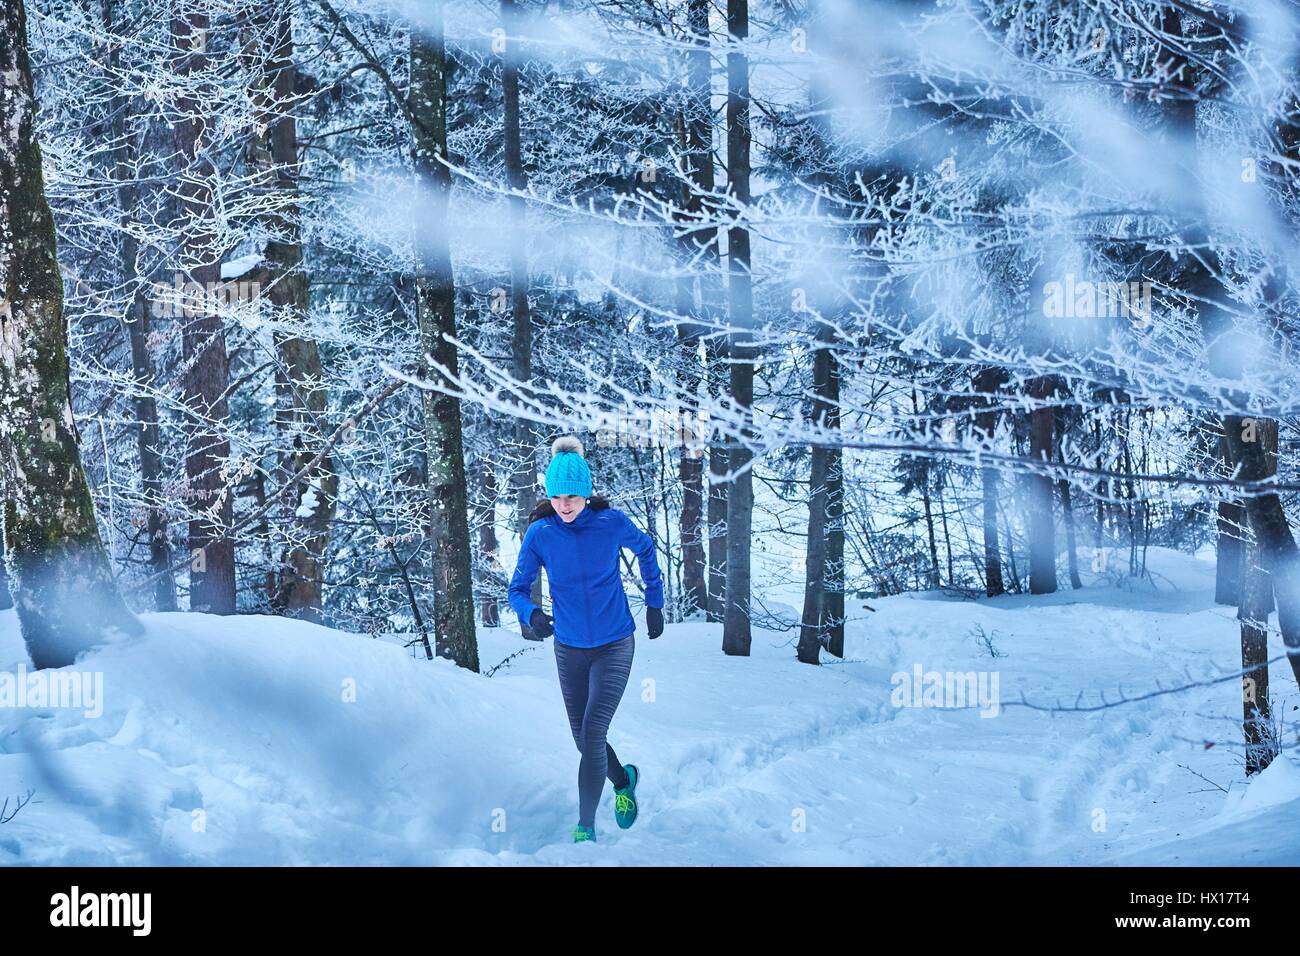 In Germania, in Baviera, Jochberg, donna jogging nel bosco invernale Foto Stock